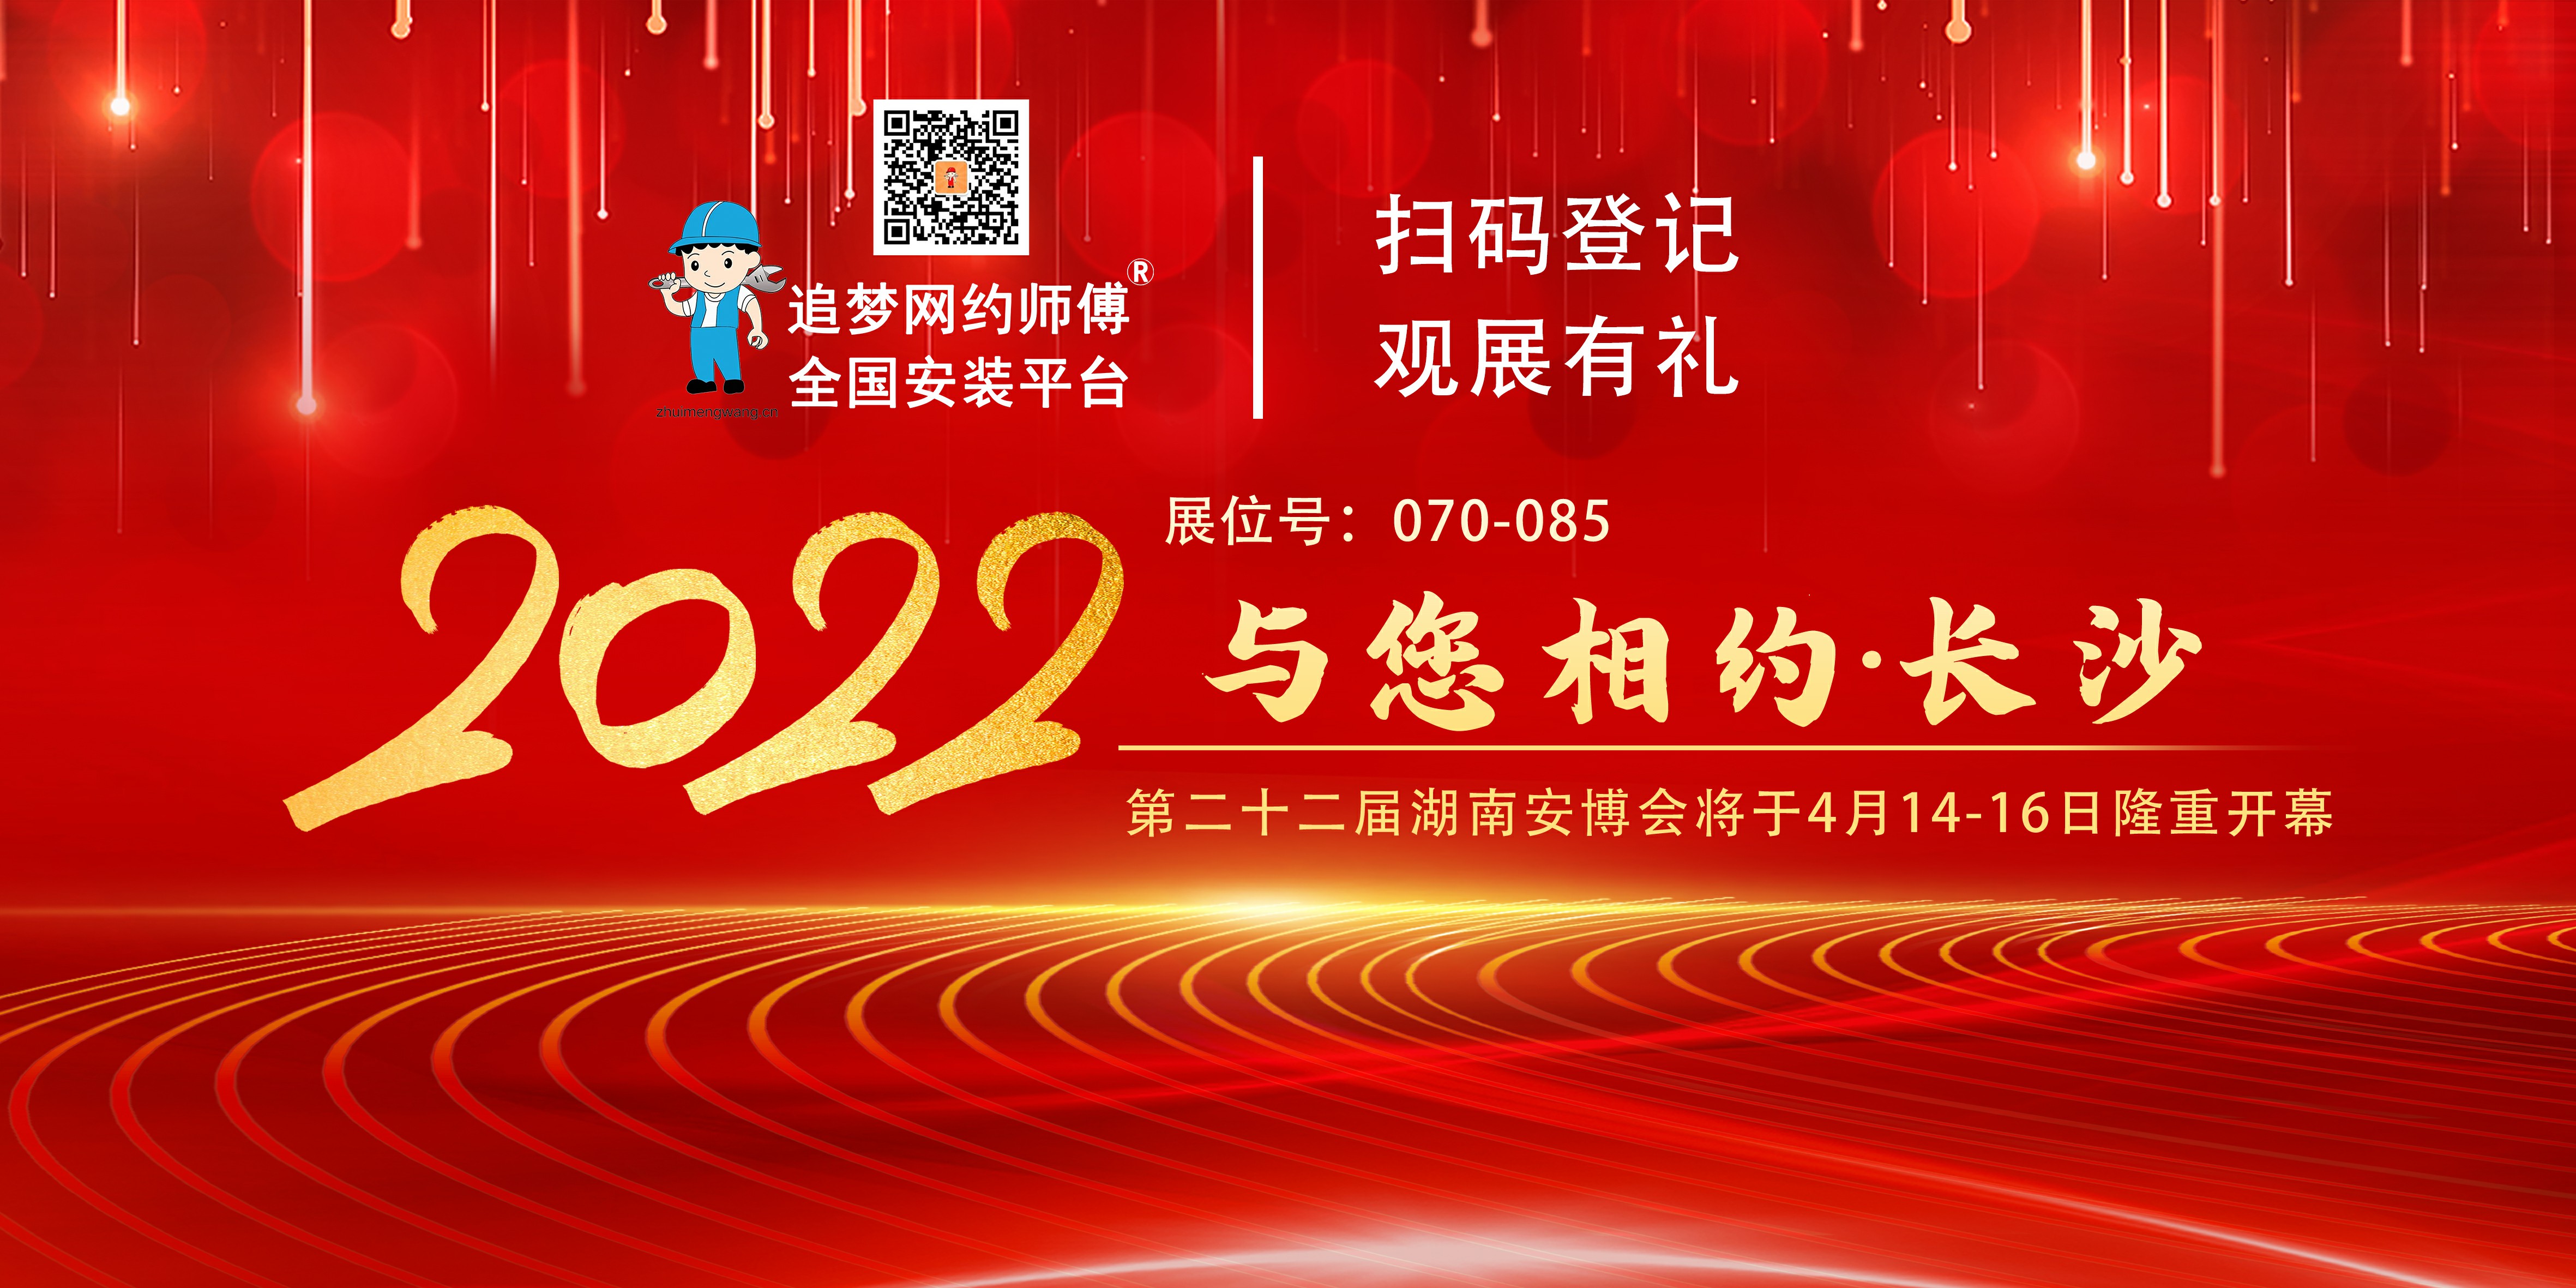 2022 第二十二届湖南安博会将在长沙隆重开幕